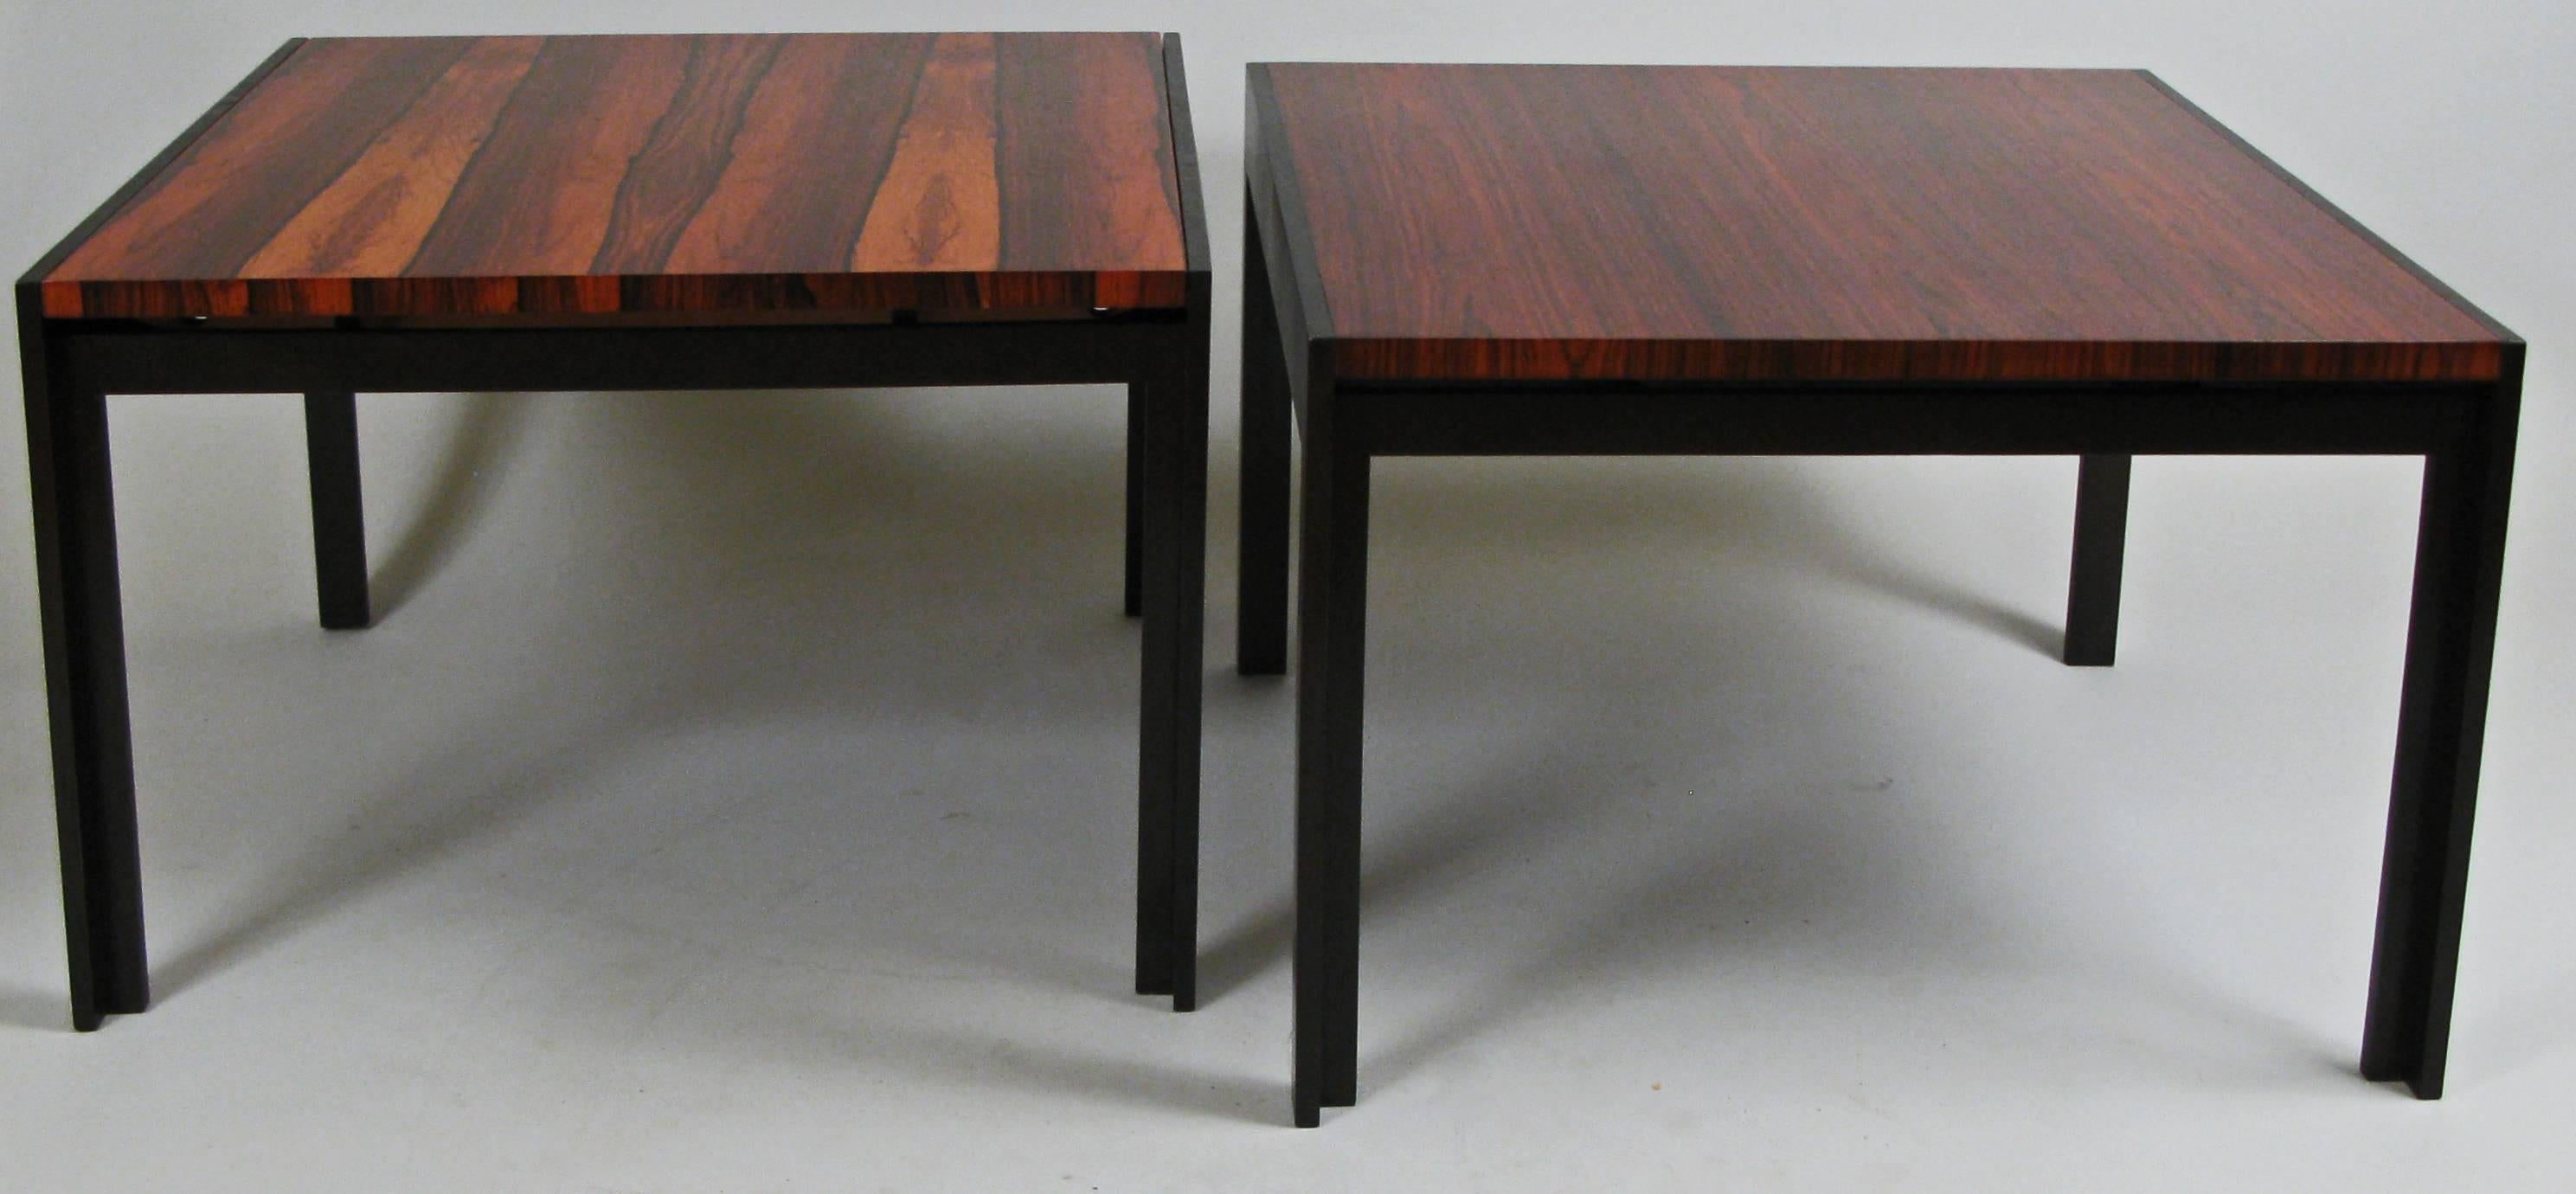 American Pair of Elegant Modern Rosewood Tables by Baker